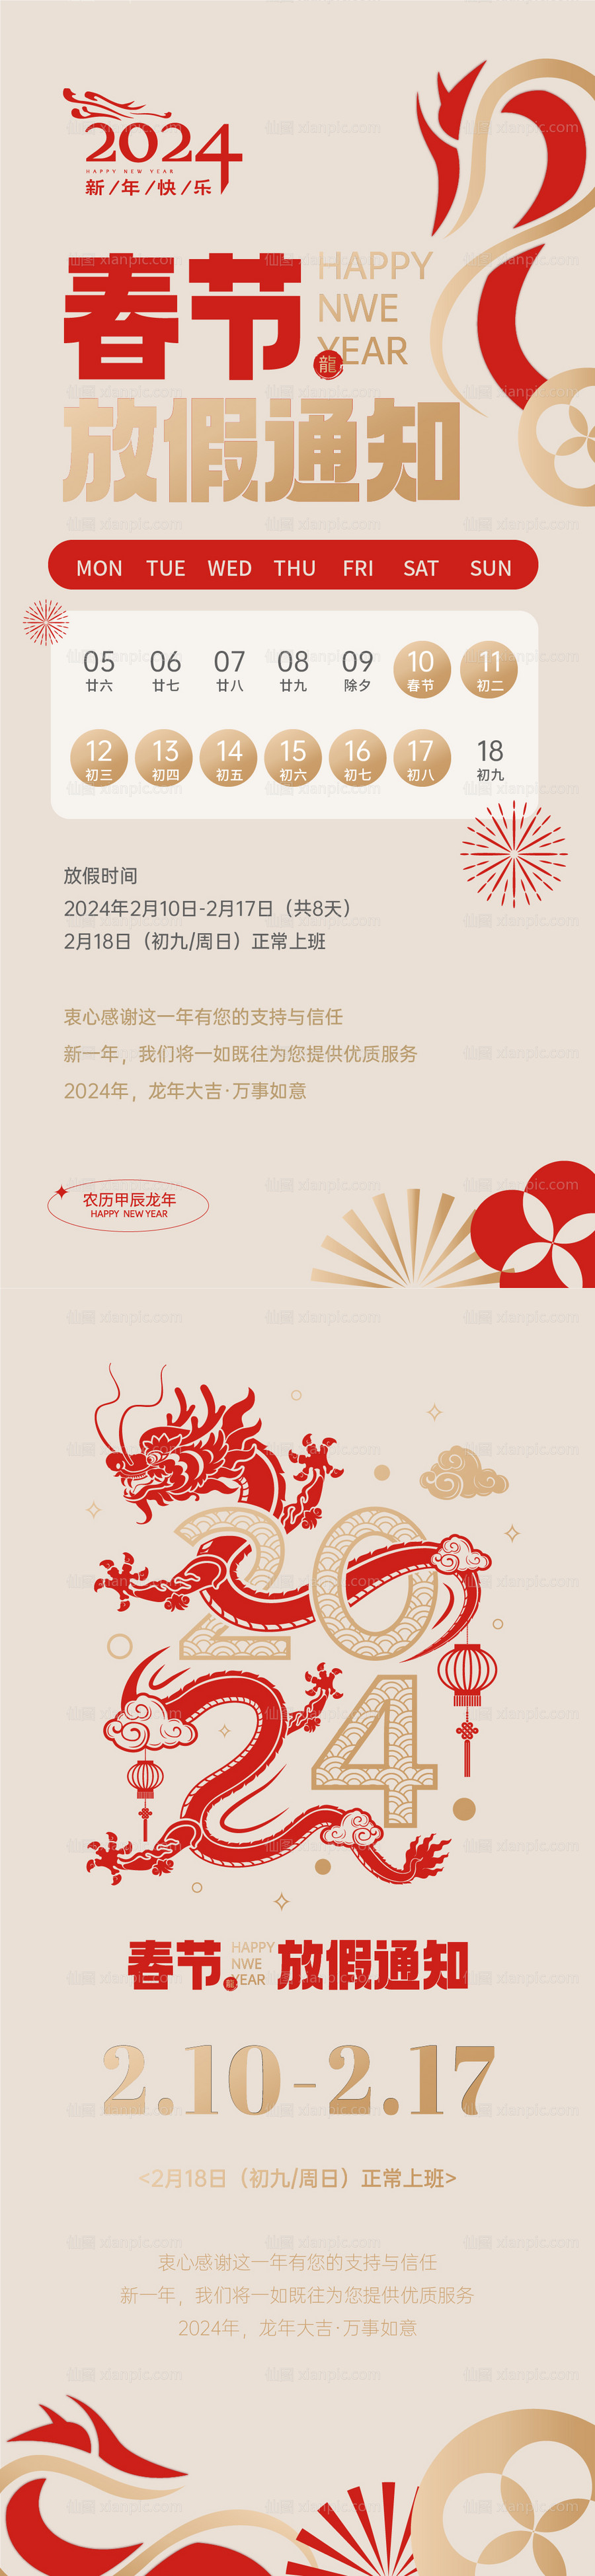 素材乐-龙年春节放假通知海报